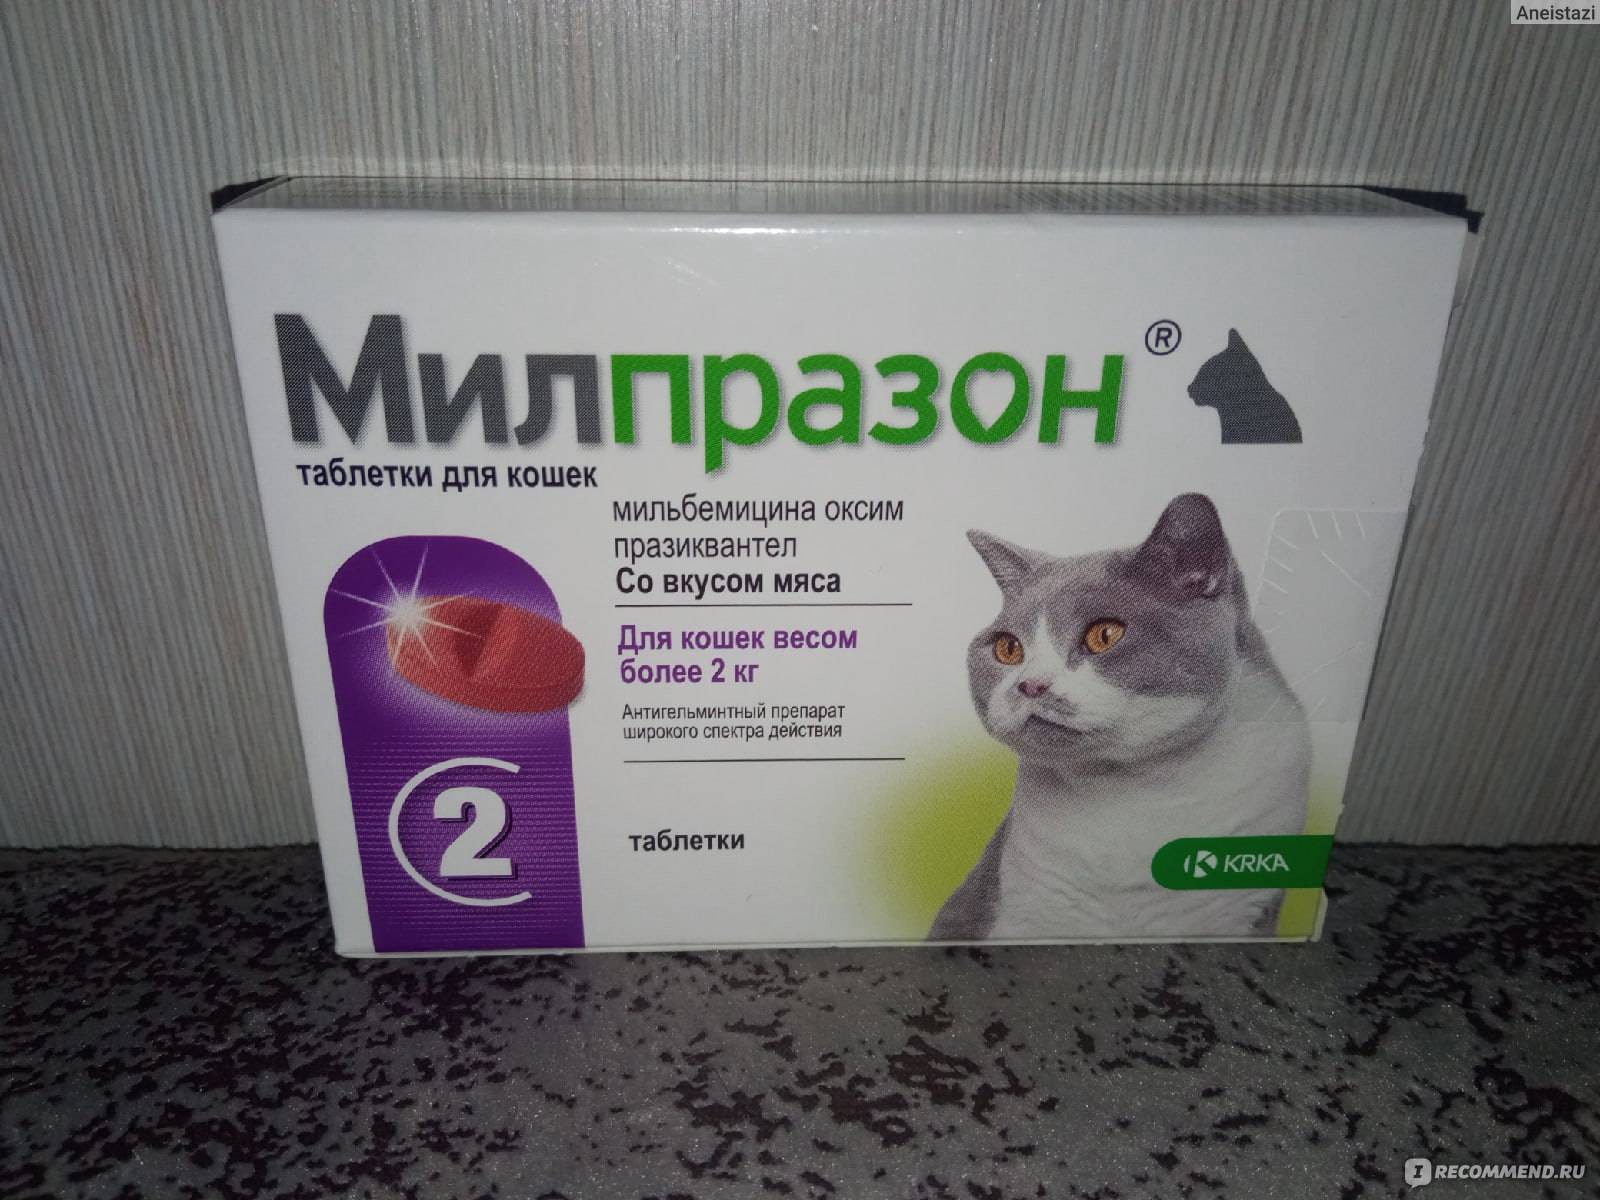 Антигельминтные препараты широкого спектра действия для человека. Антигельминтные препараты. Милпразон. Для котов антигельминтное и. Противоглистные препараты для кошек широкого спектра.